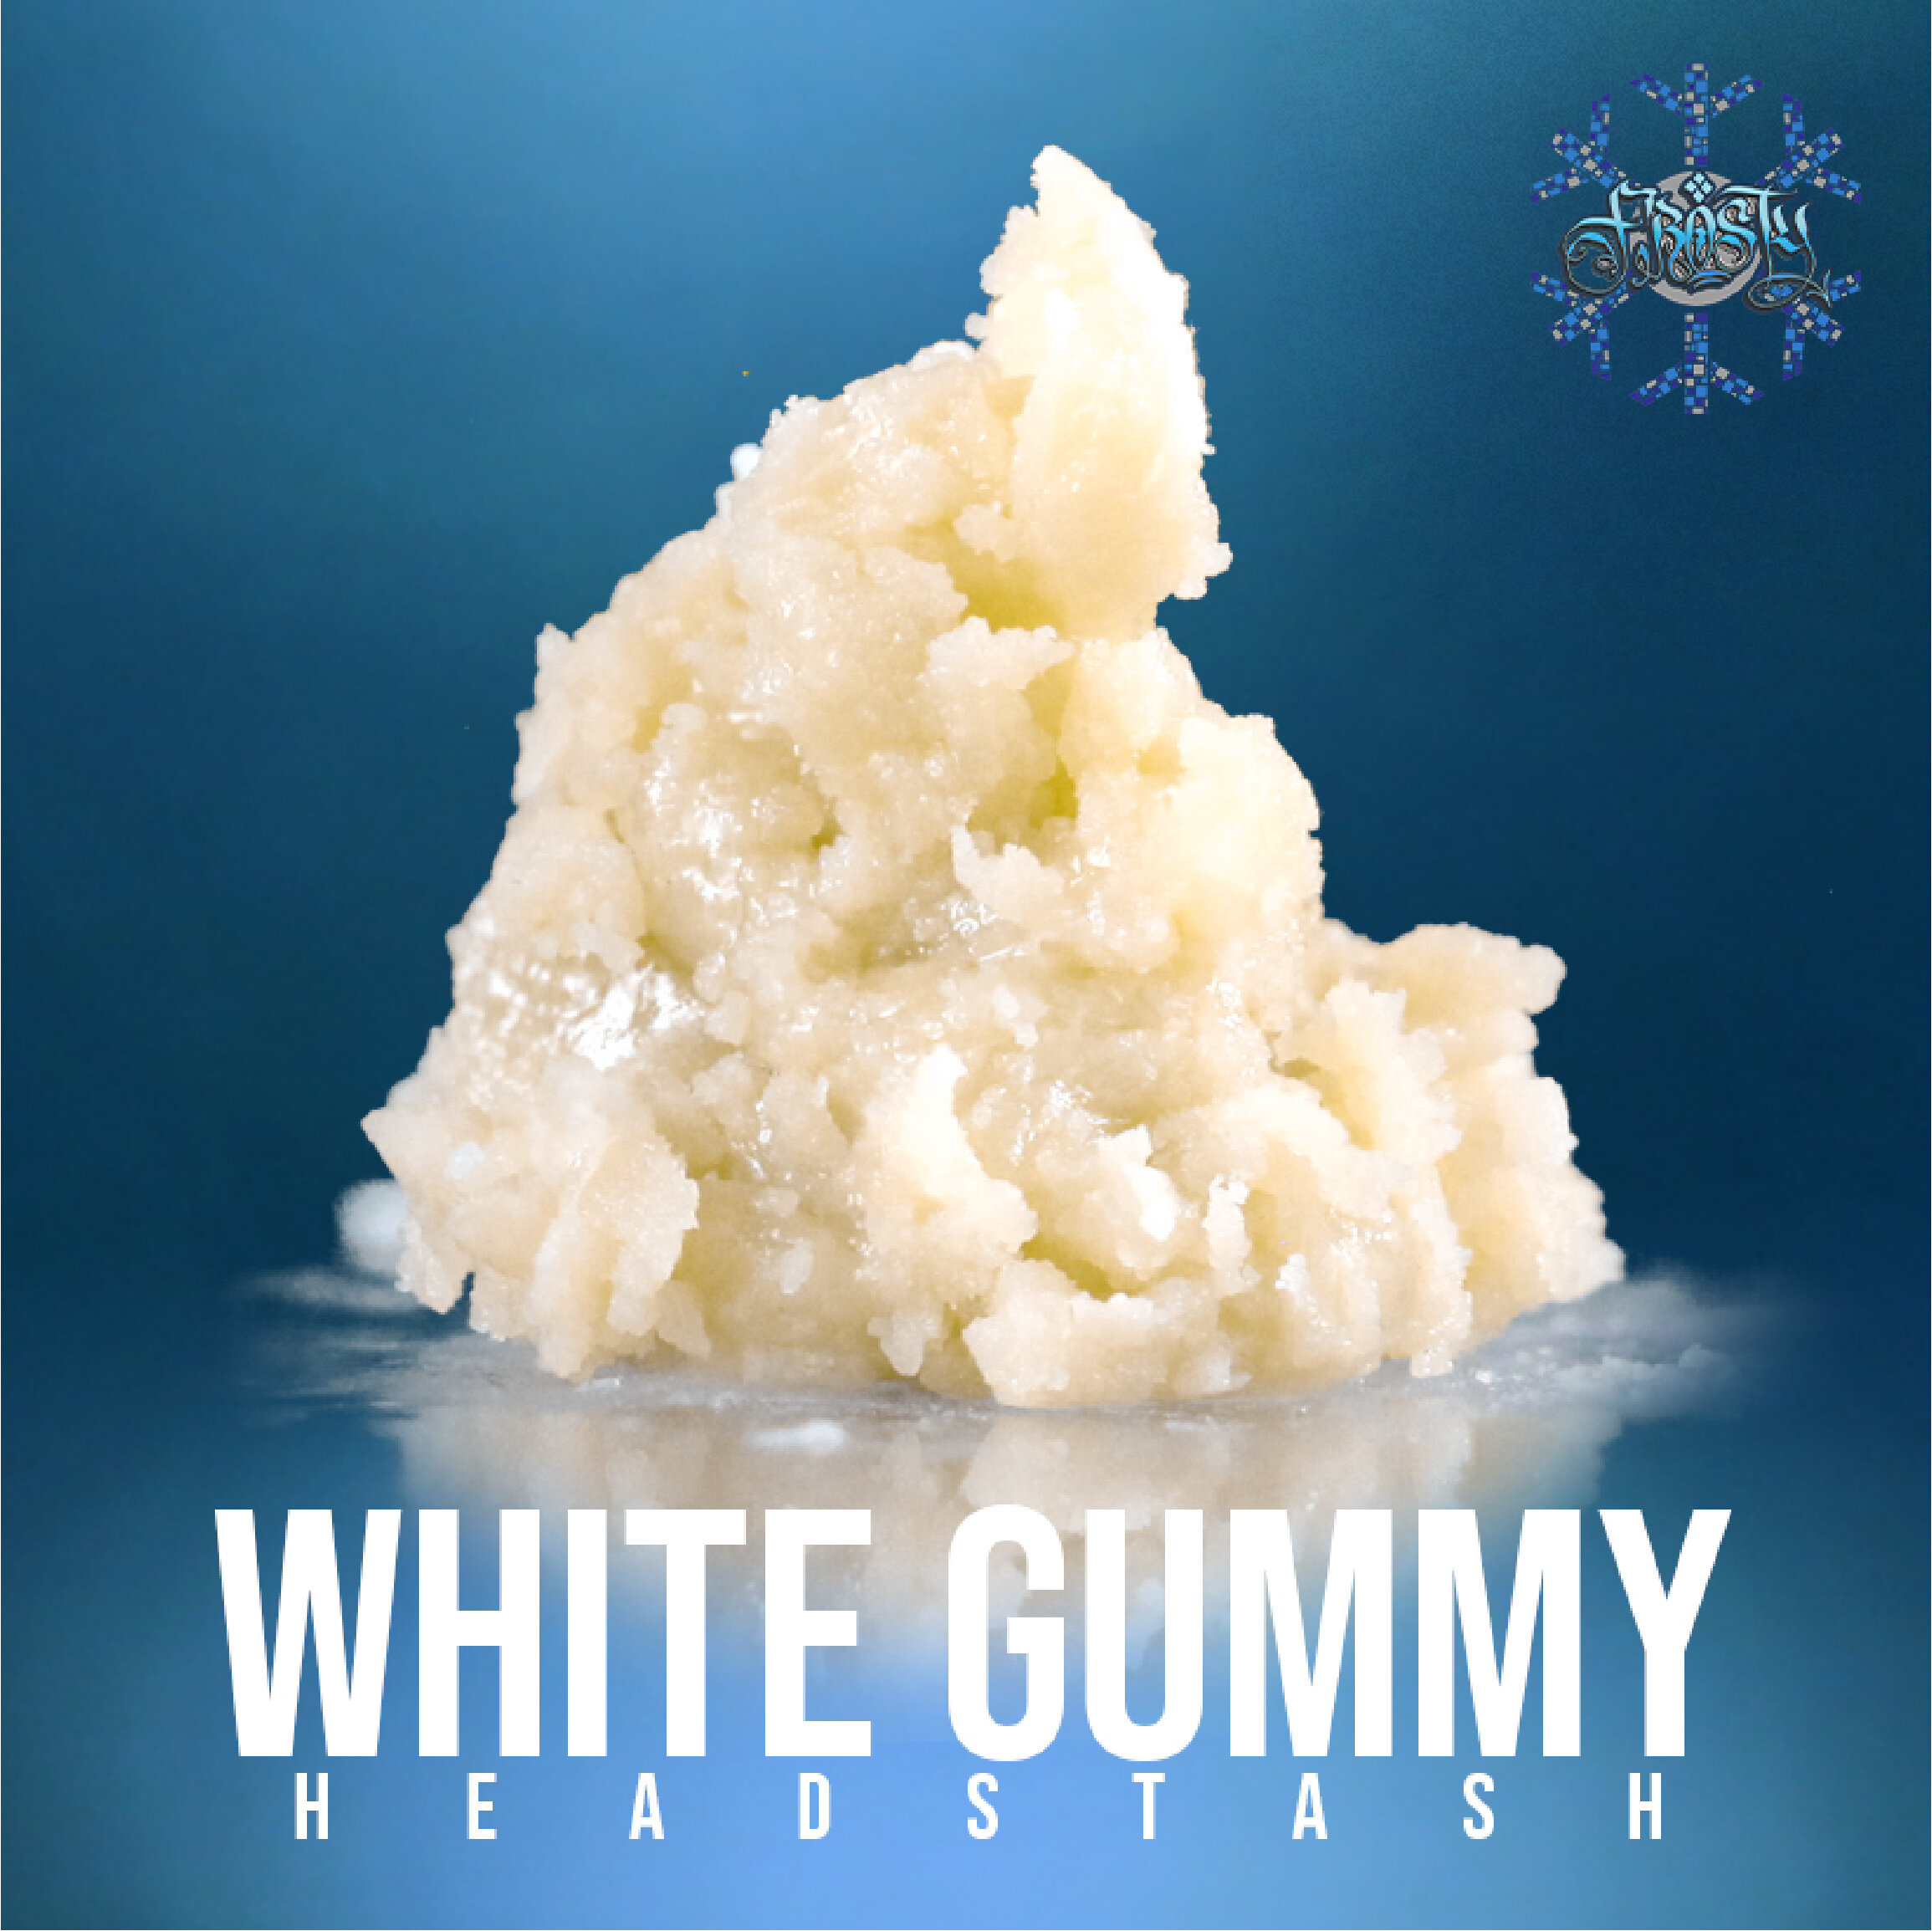 White Gummy HS.jpg